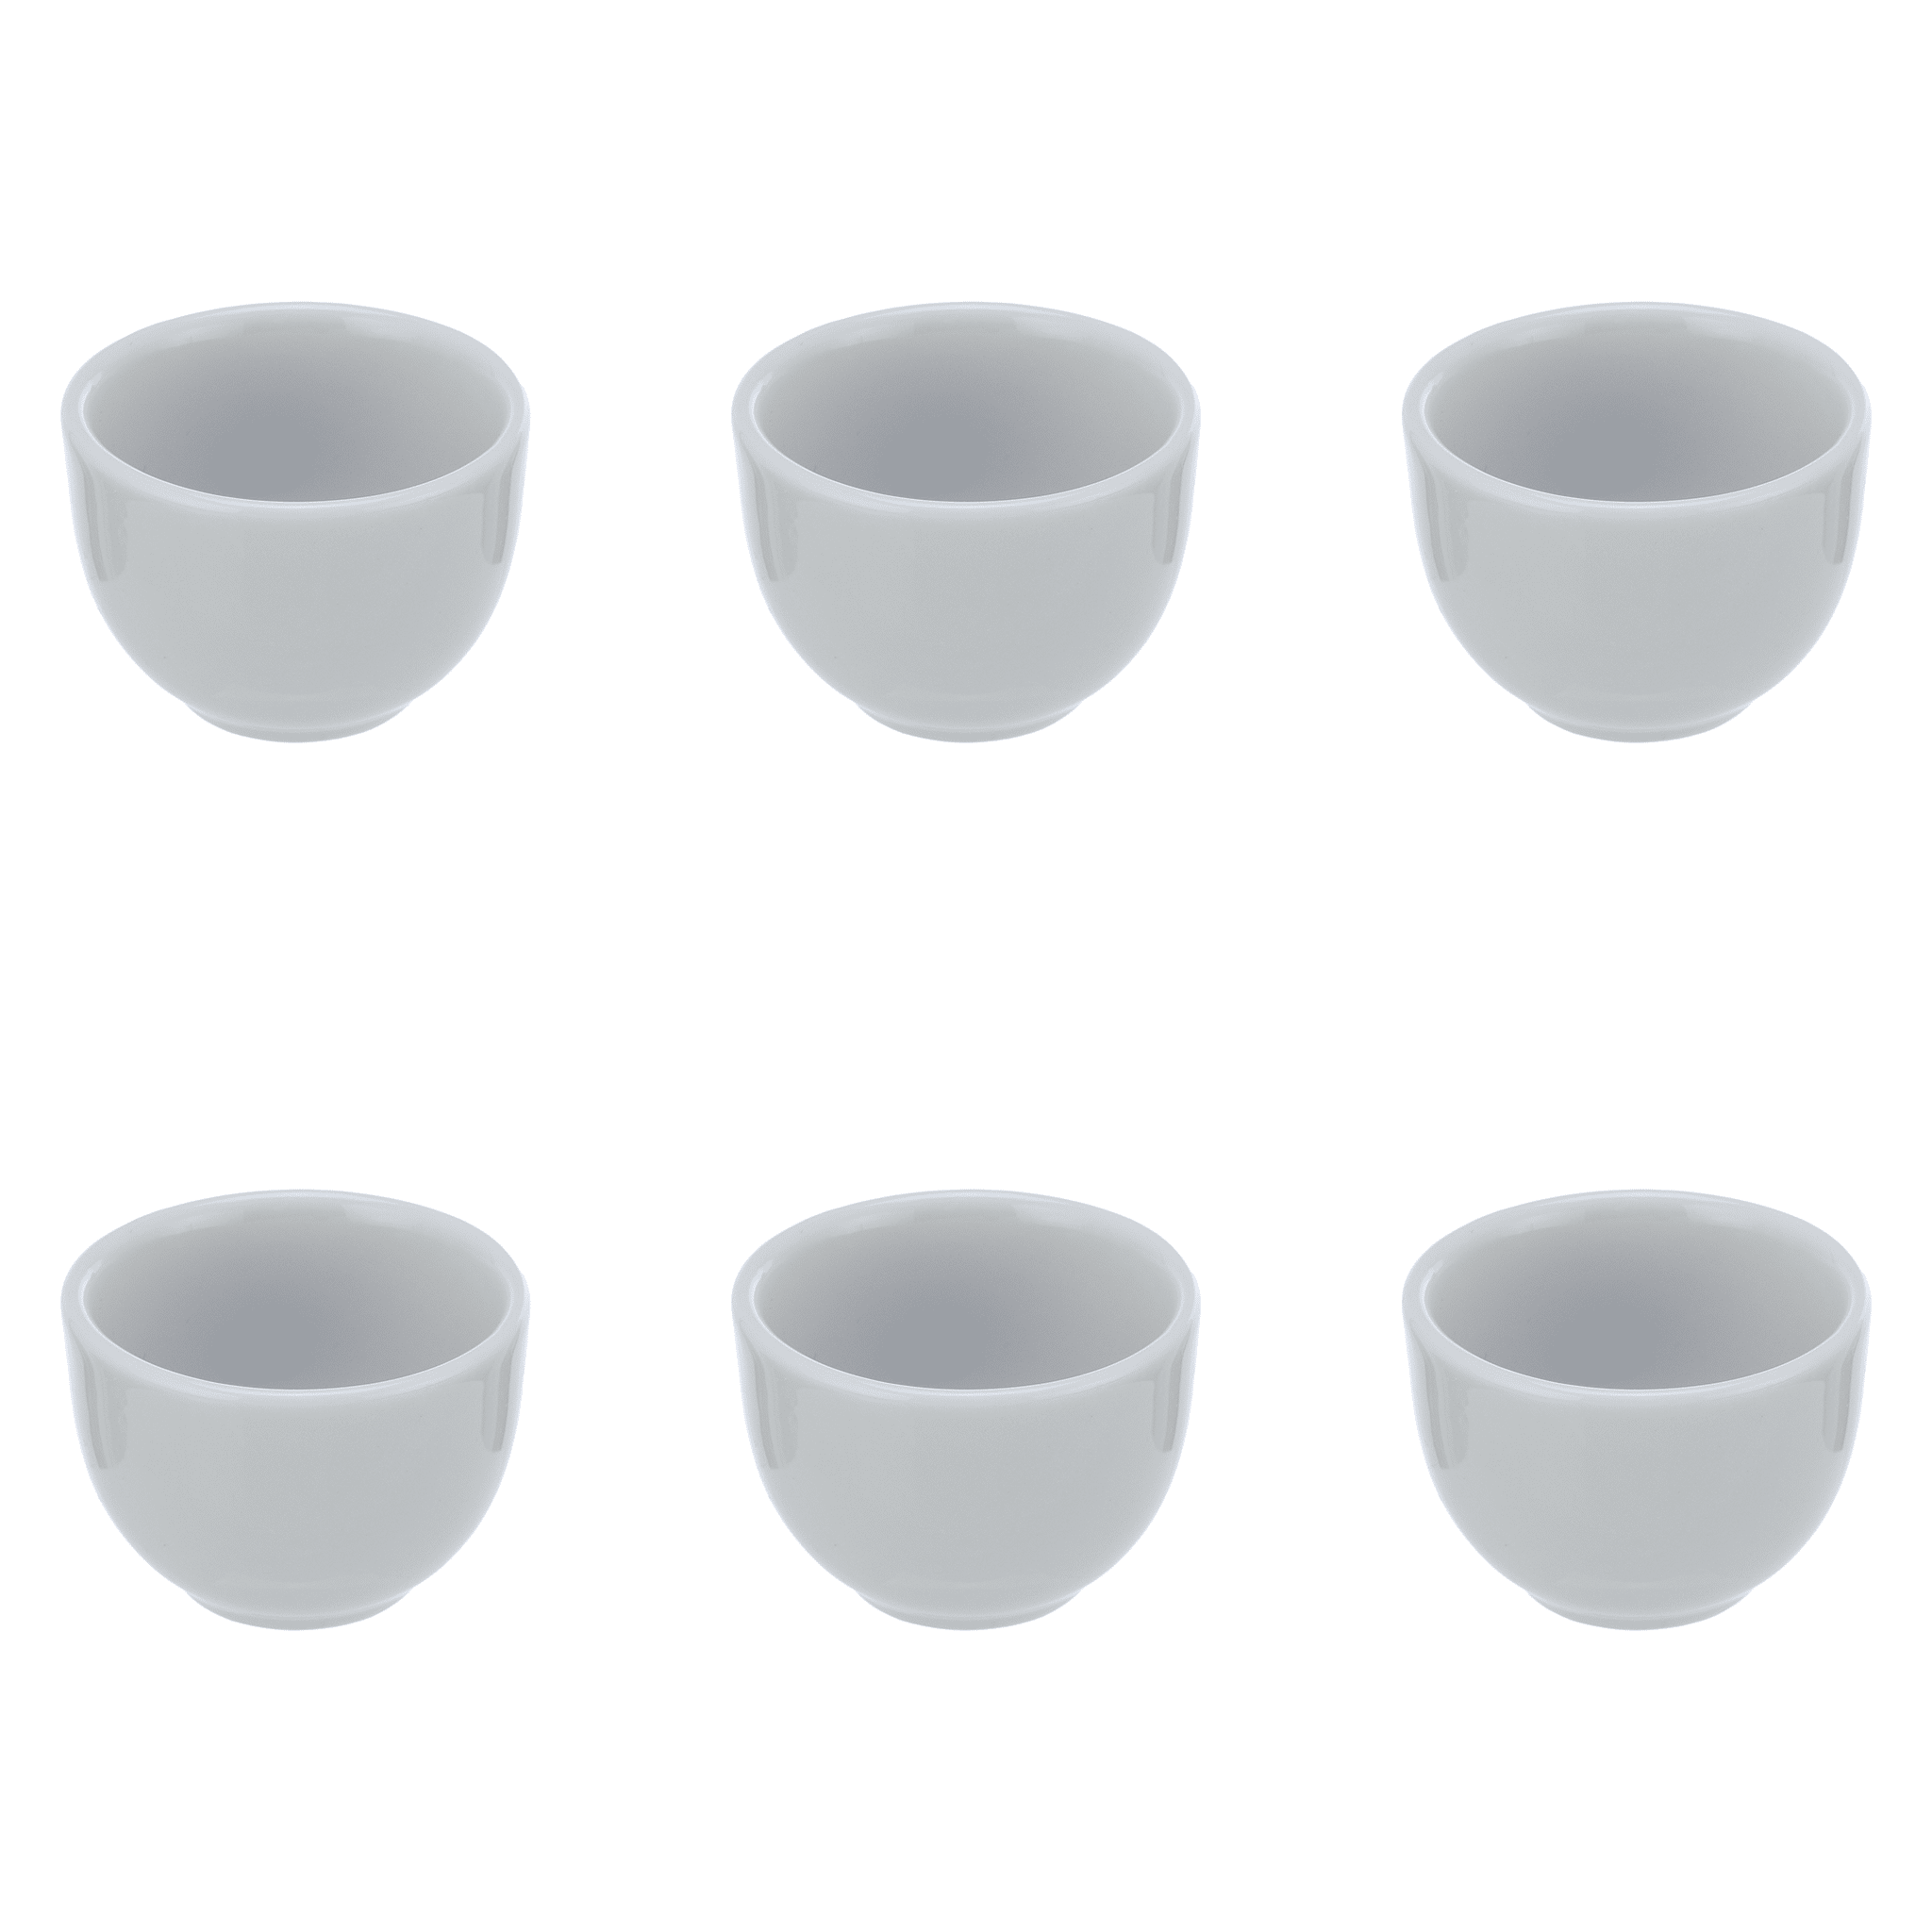 Senzo - Round Ramekin Set 6 Pieces - White - Porcelain - 5cm - 520001194